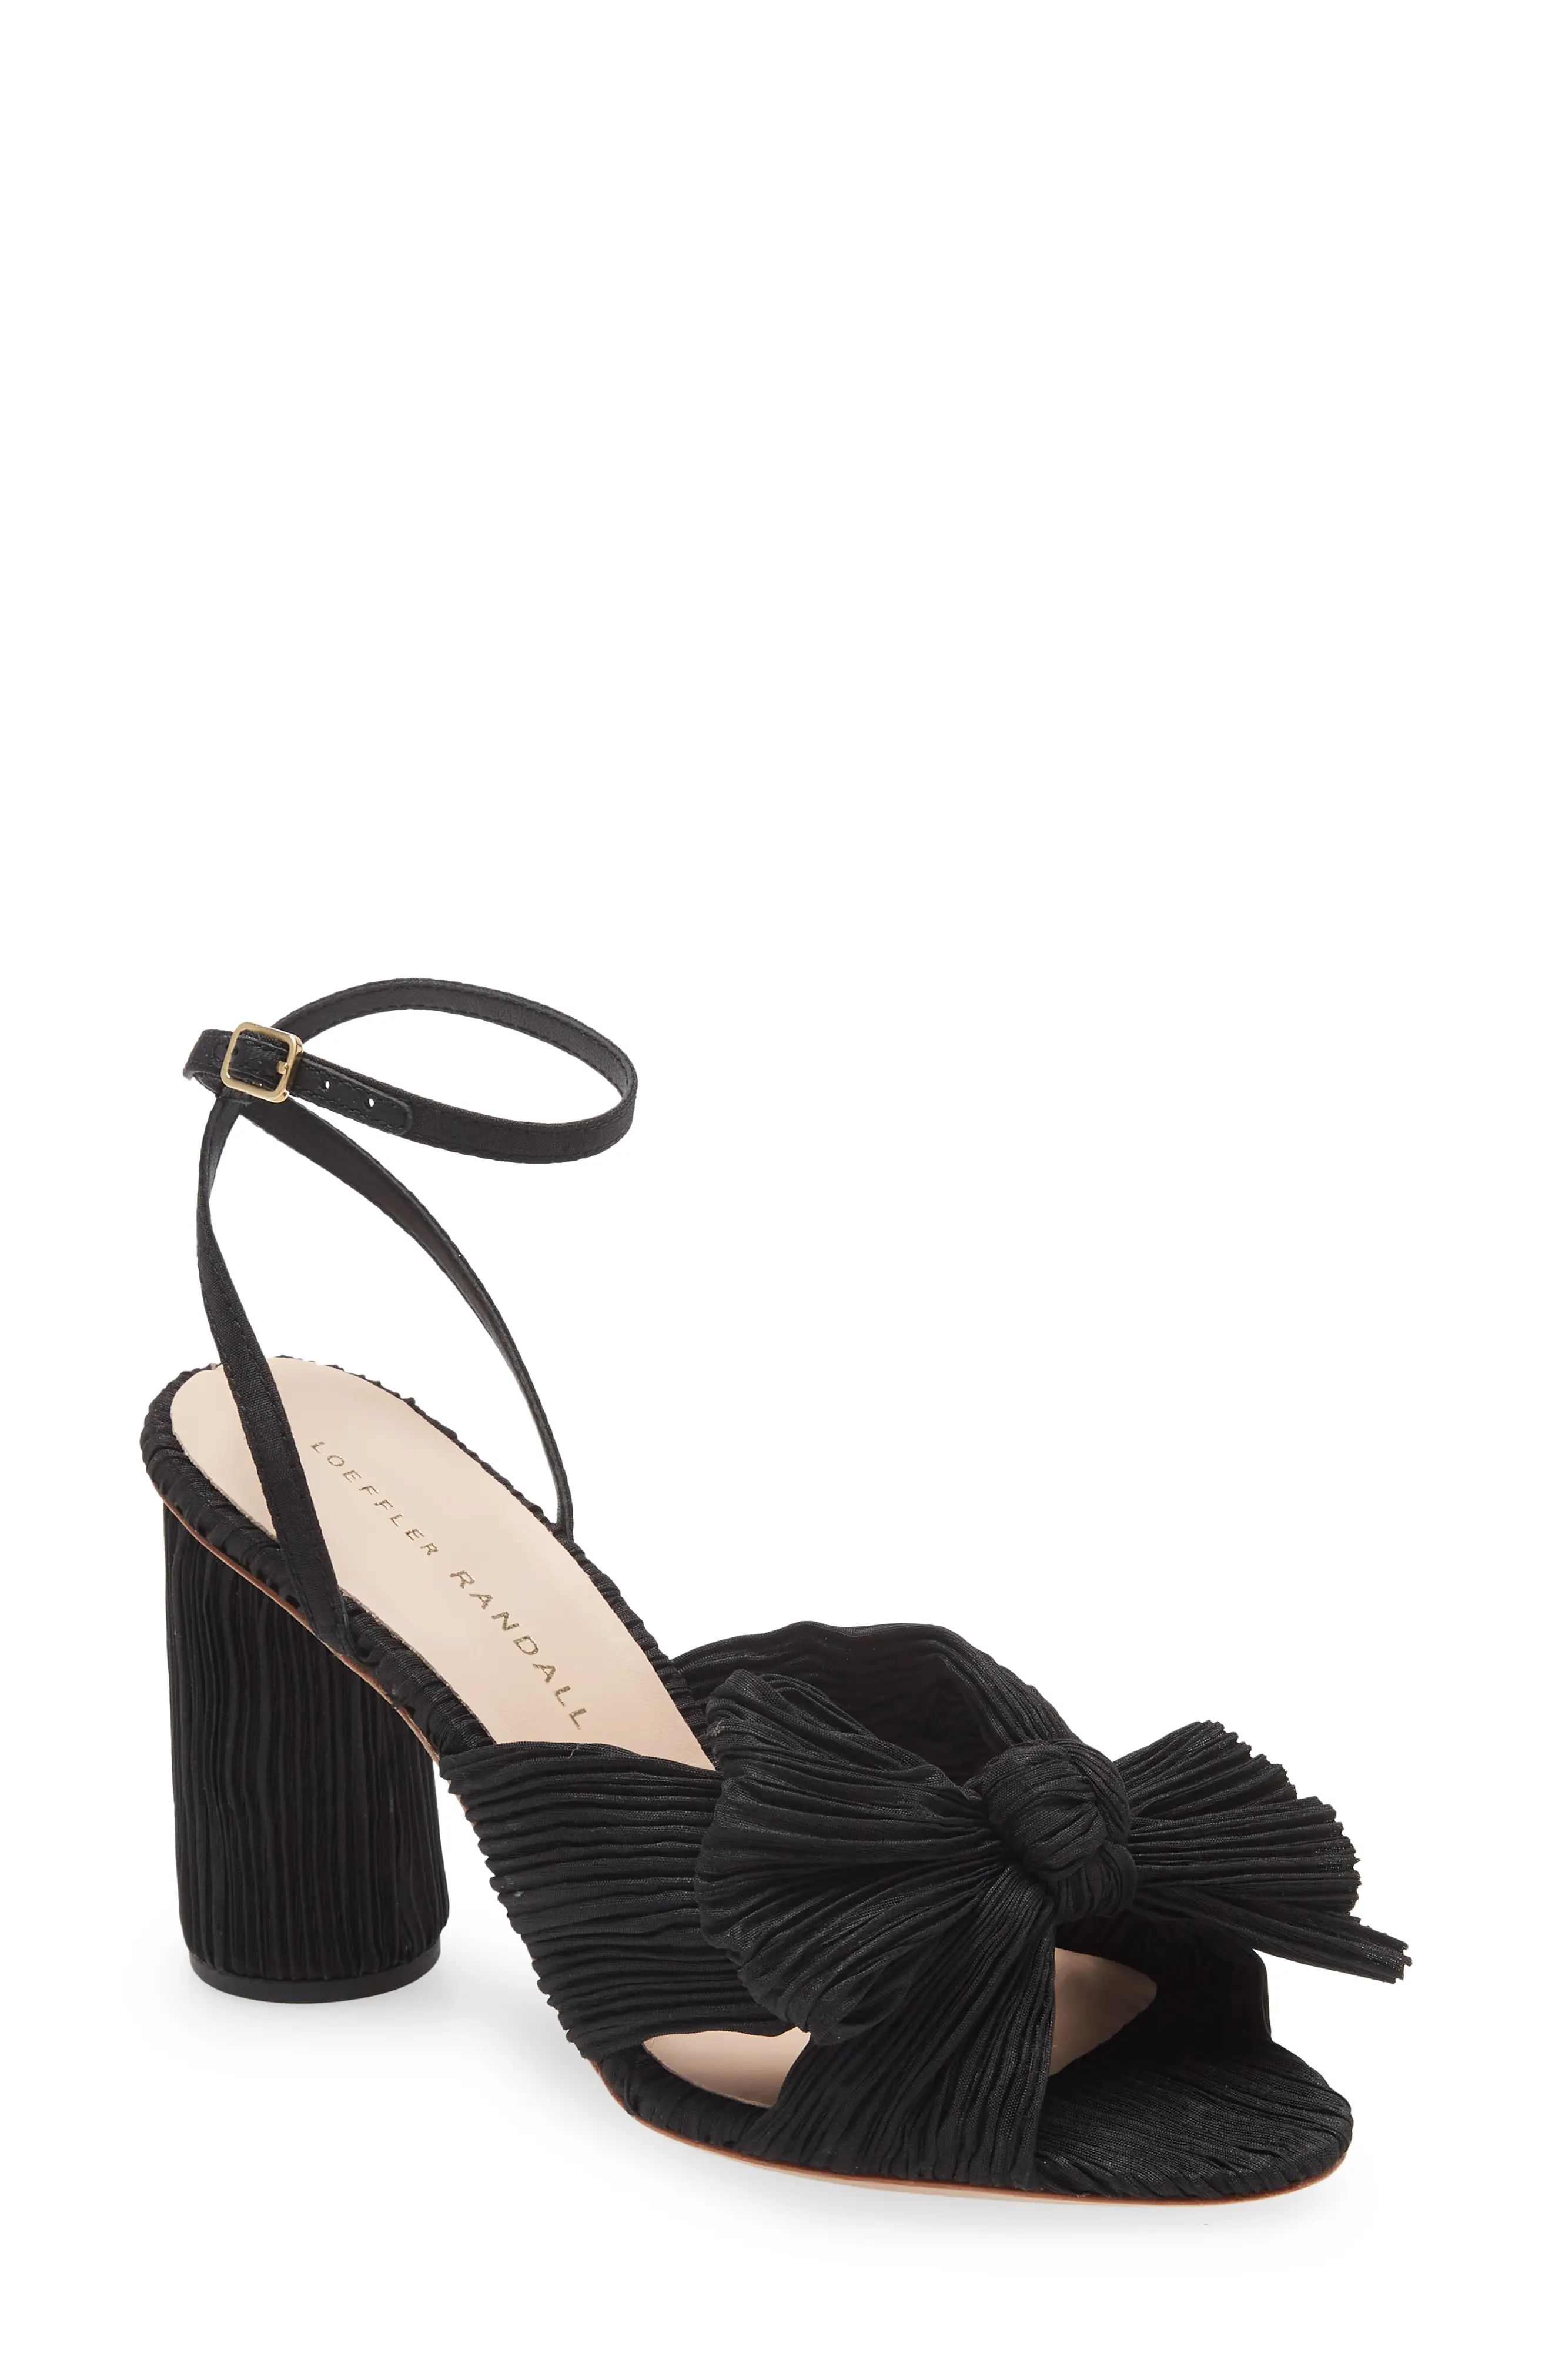 Loeffler Randall Camellia Knotted Sandal, Size 5 in Black at Nordstrom | Nordstrom